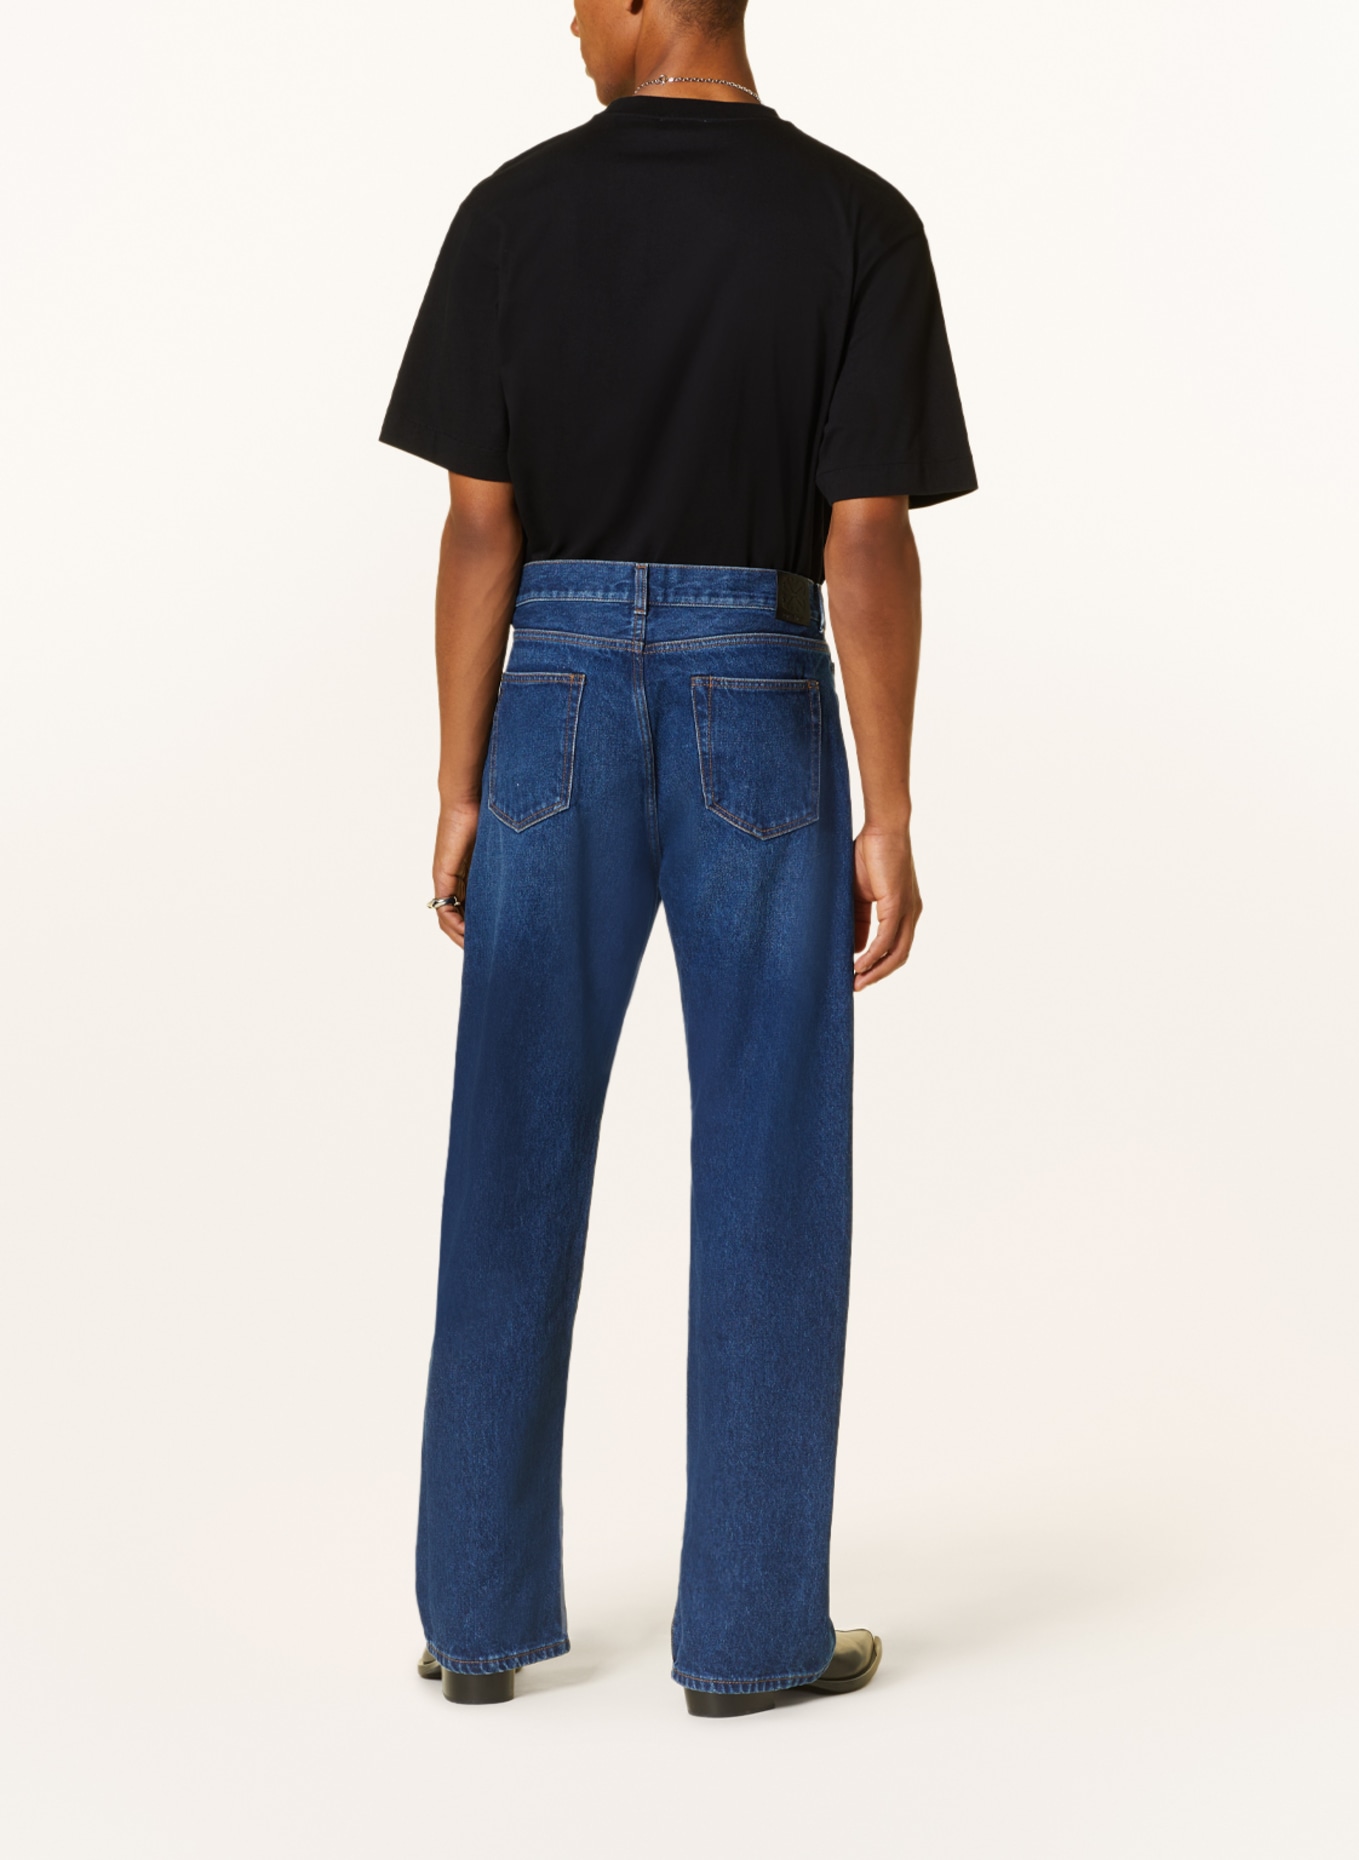 Off-White Jeans regular fit, Color: 4400 medium blue (Image 3)